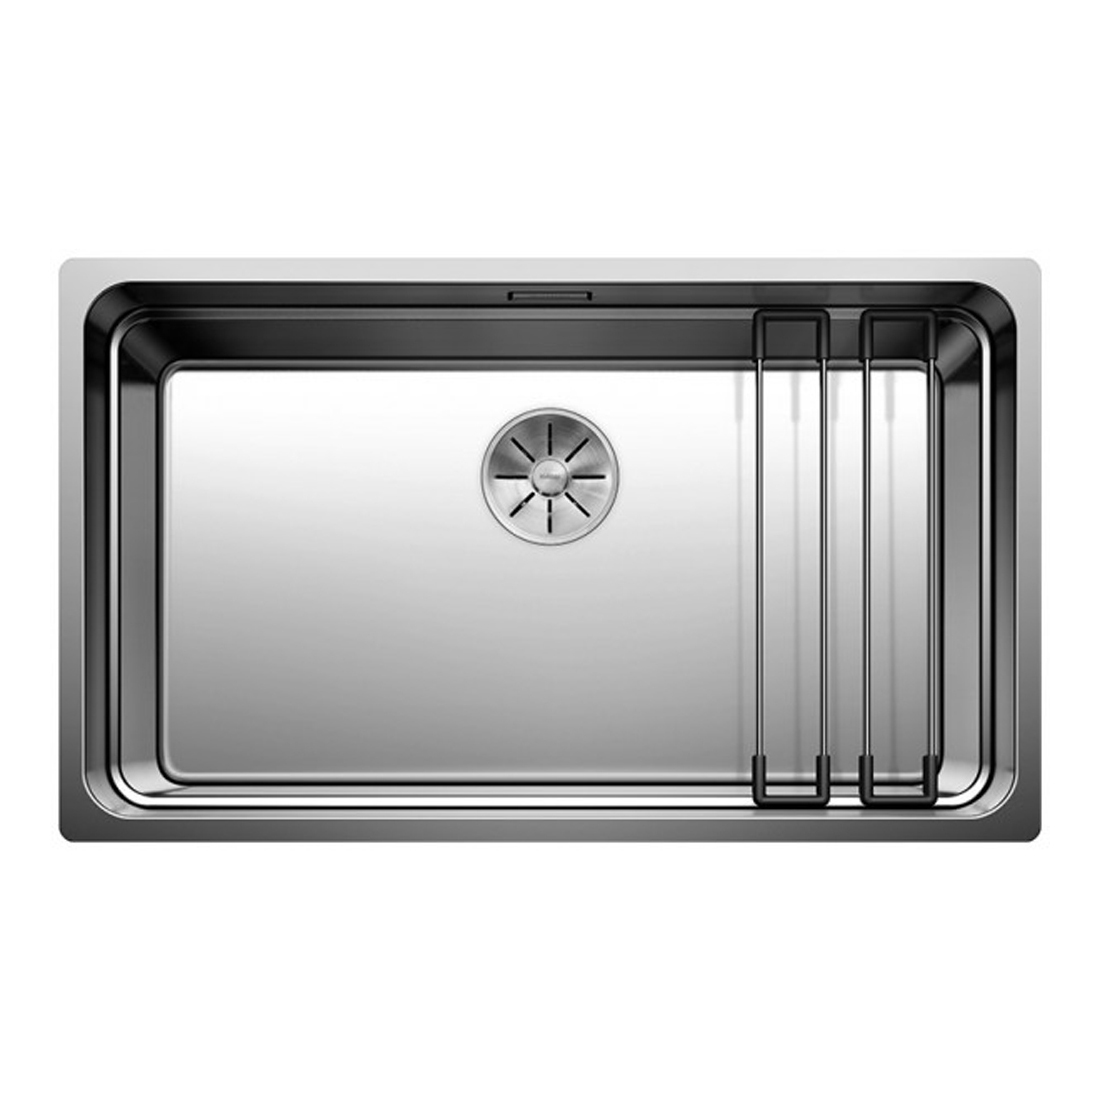 Кухонная мойка Blanco Etagon 700-U зеркальная полировка кухонная мойка blanco zerox 700 u зеркальная полировка